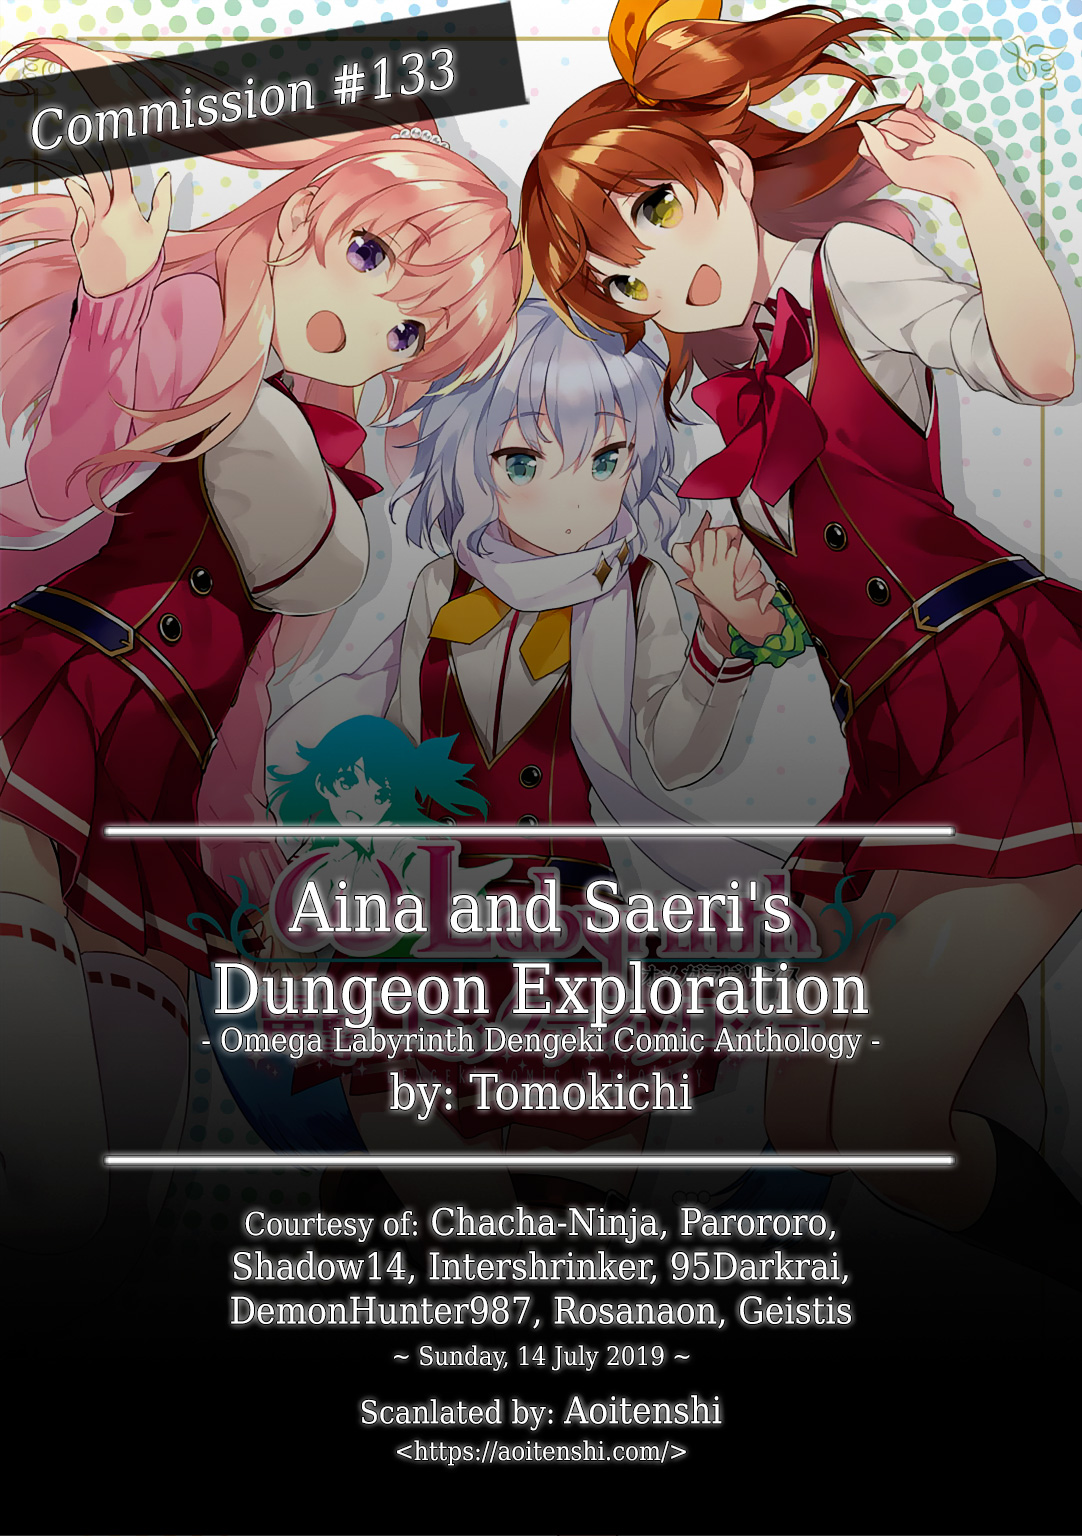 ω Labyrinth Dengeki Comic Anthology Ch. 4 Aina and Saeri's Dungeon Exploration (Tomokichi)